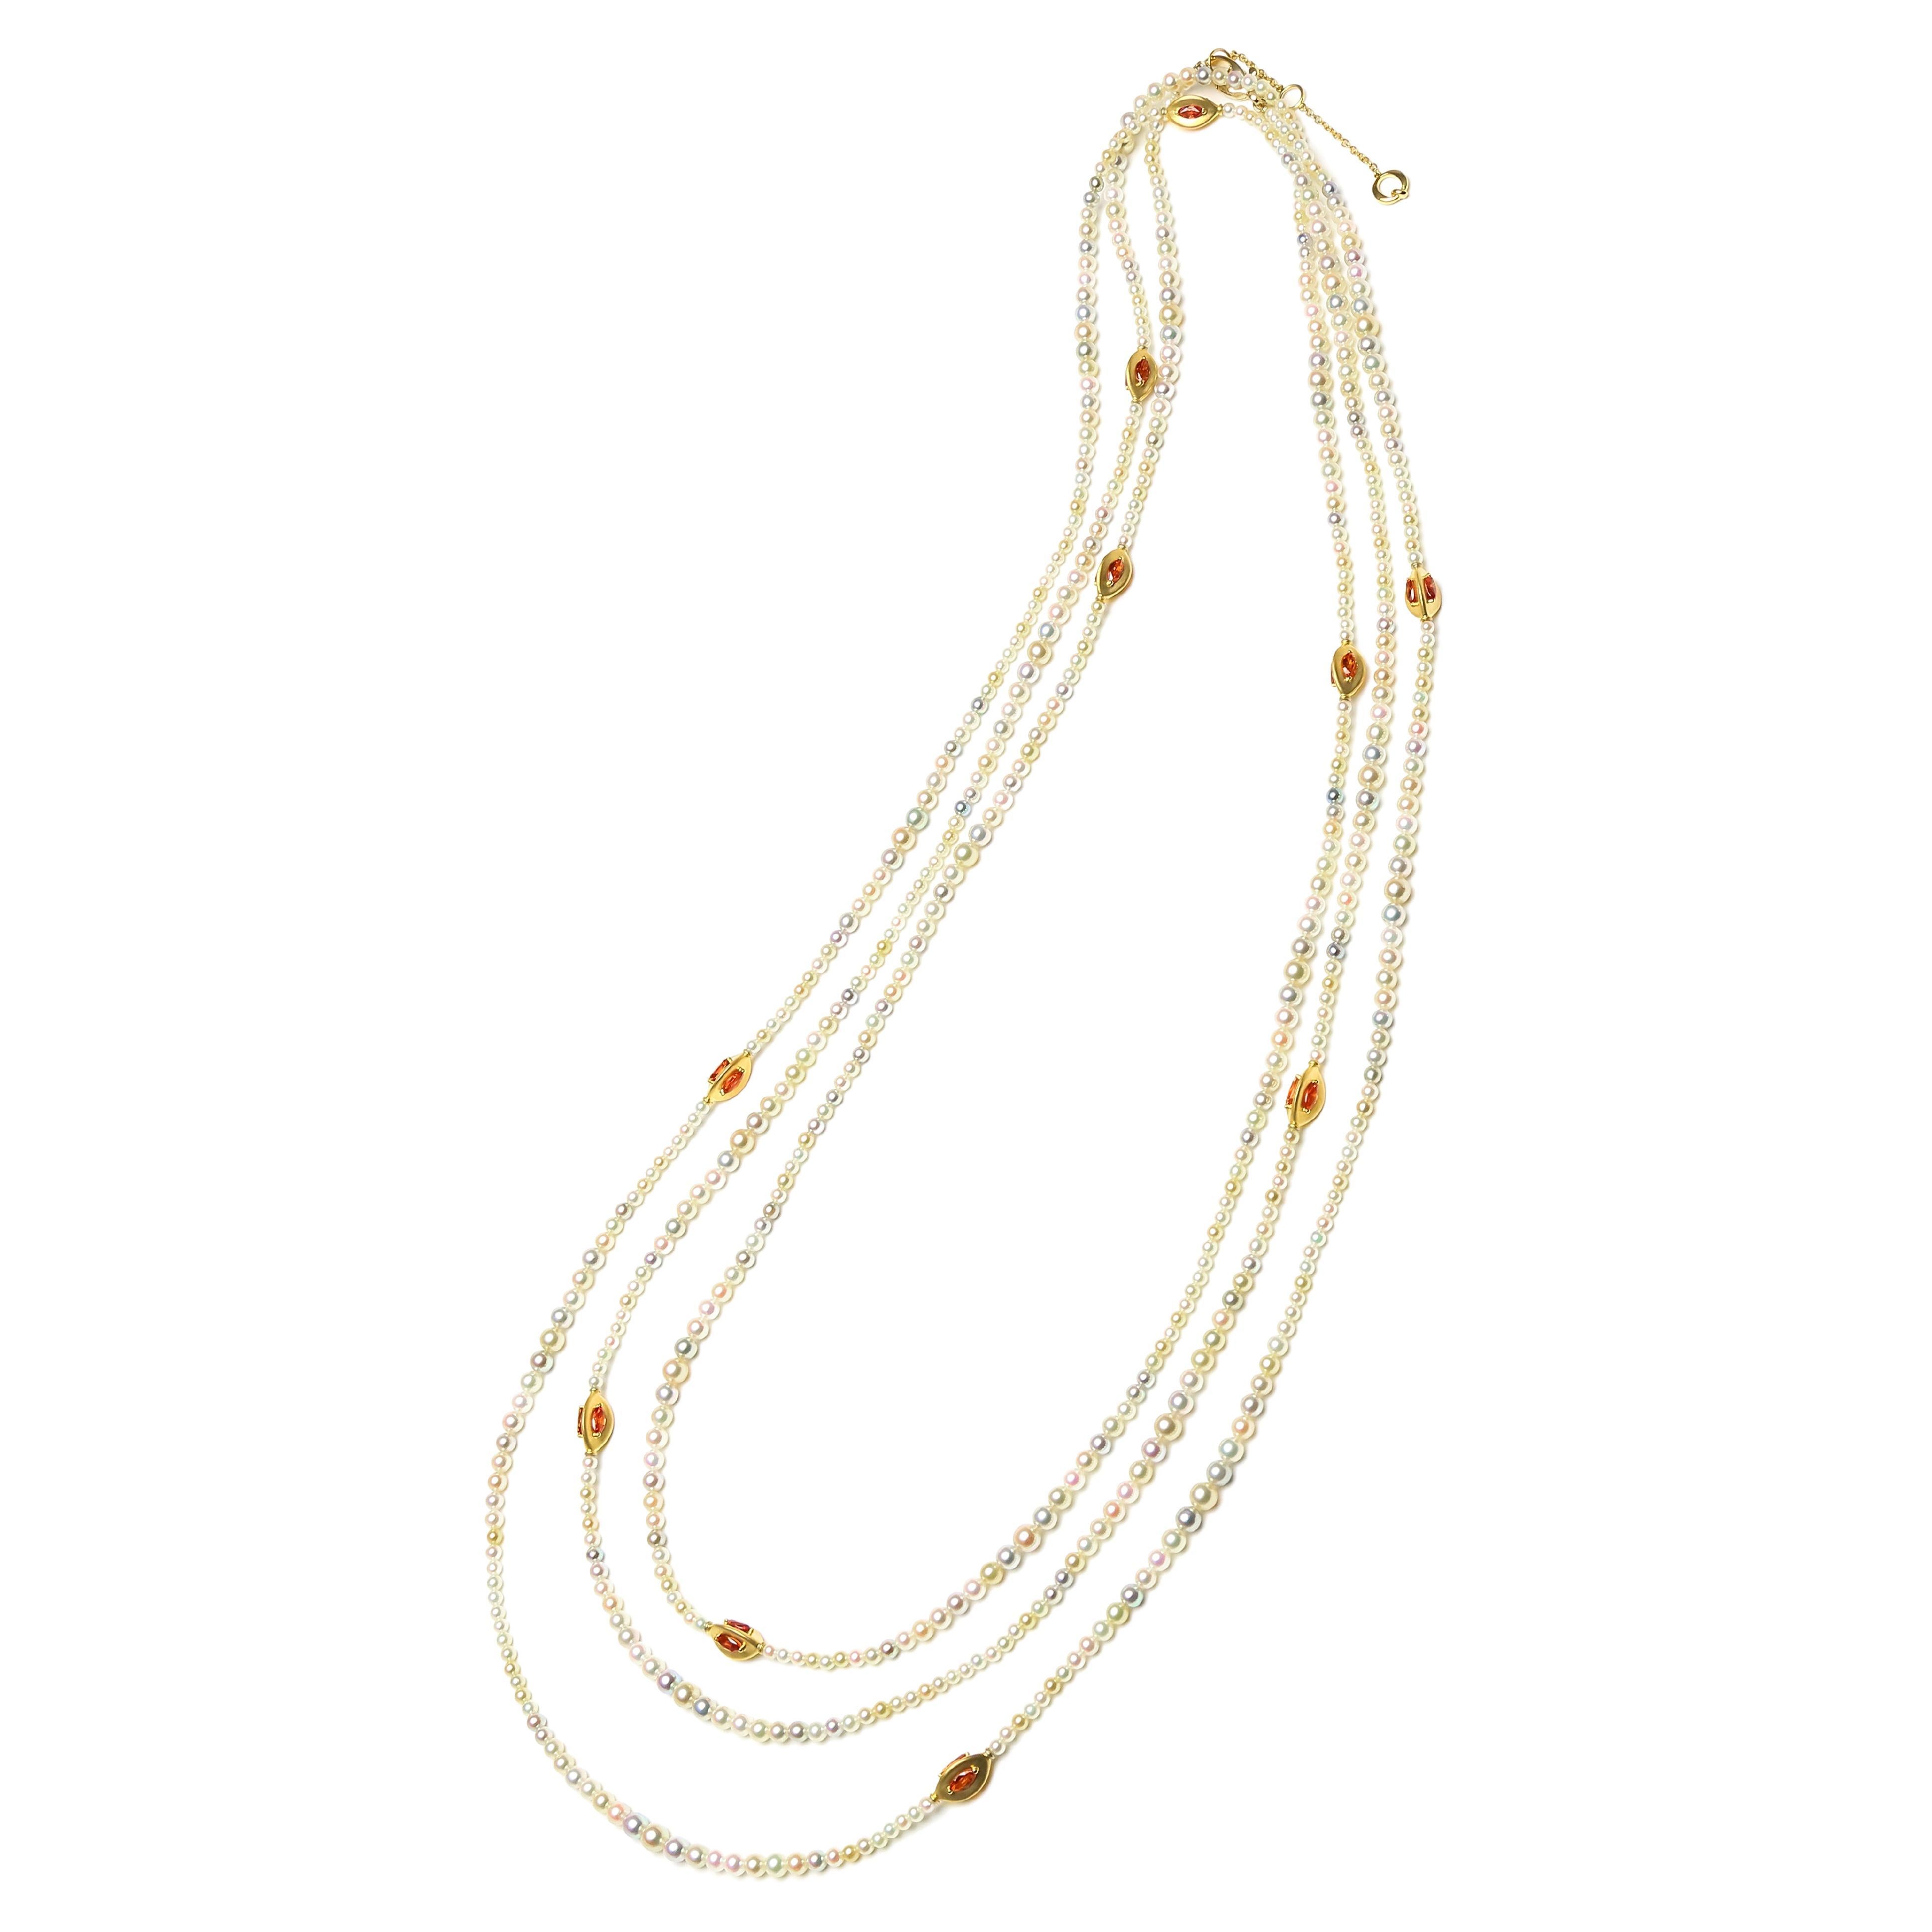 Long collier japonais Akoya en or jaune 18 carats avec perles blanches et saphirs roses